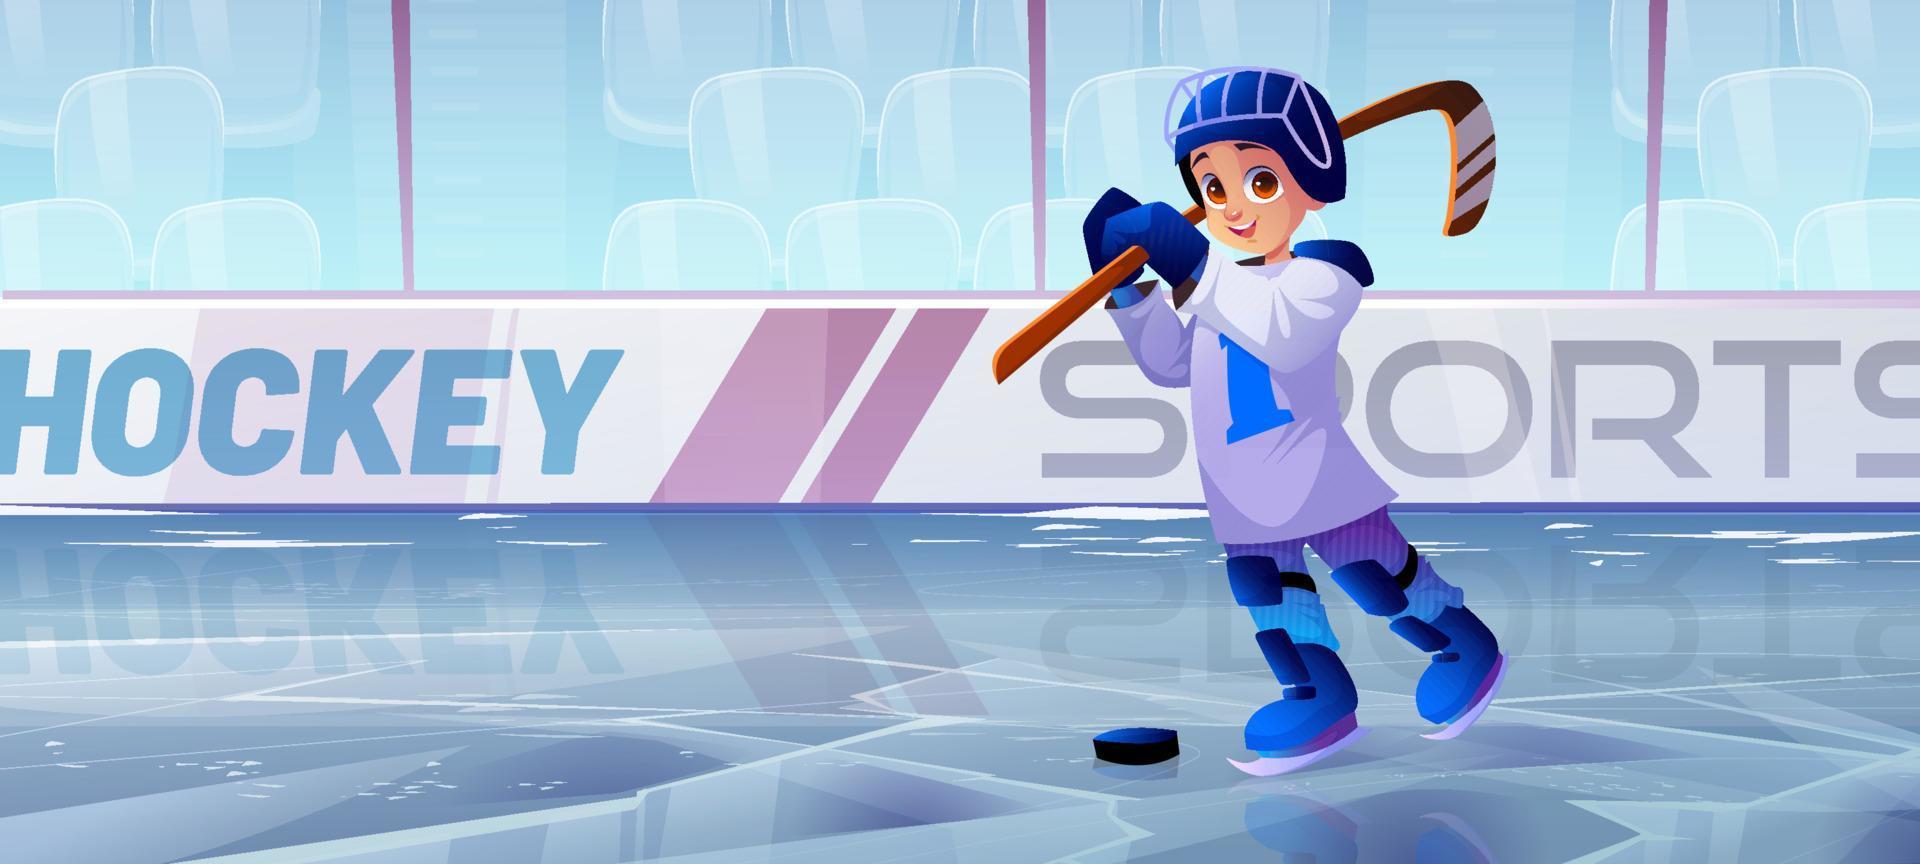 hockey ijs baan met jongen speler in skates vector